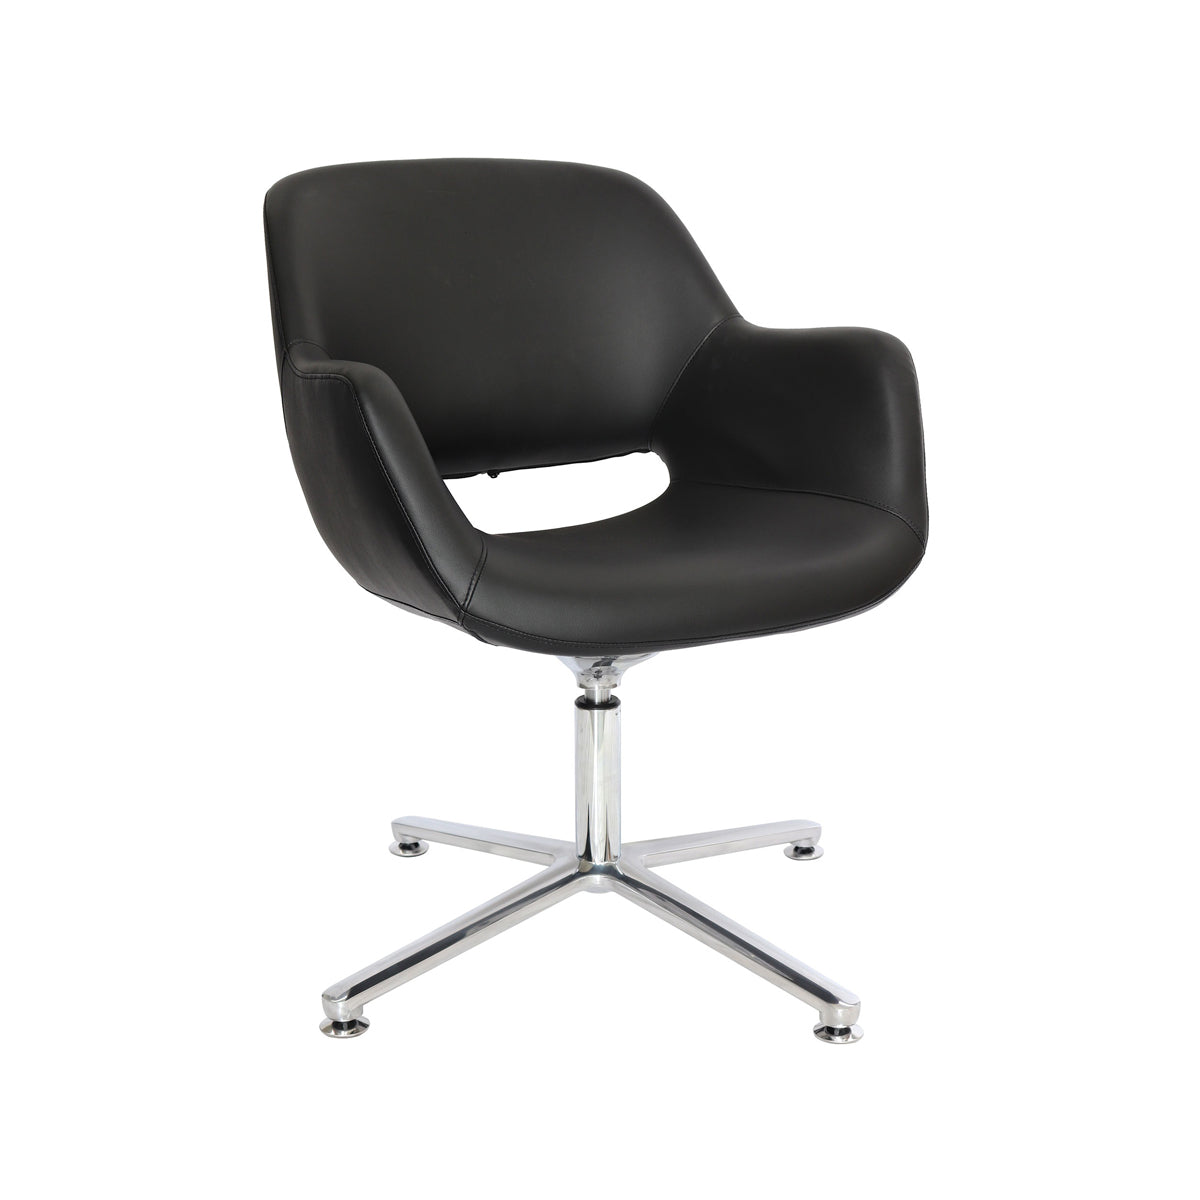 Silla de visita Wicker OHE-140 respaldo y asiento tapizado en leather negro con base aluminio